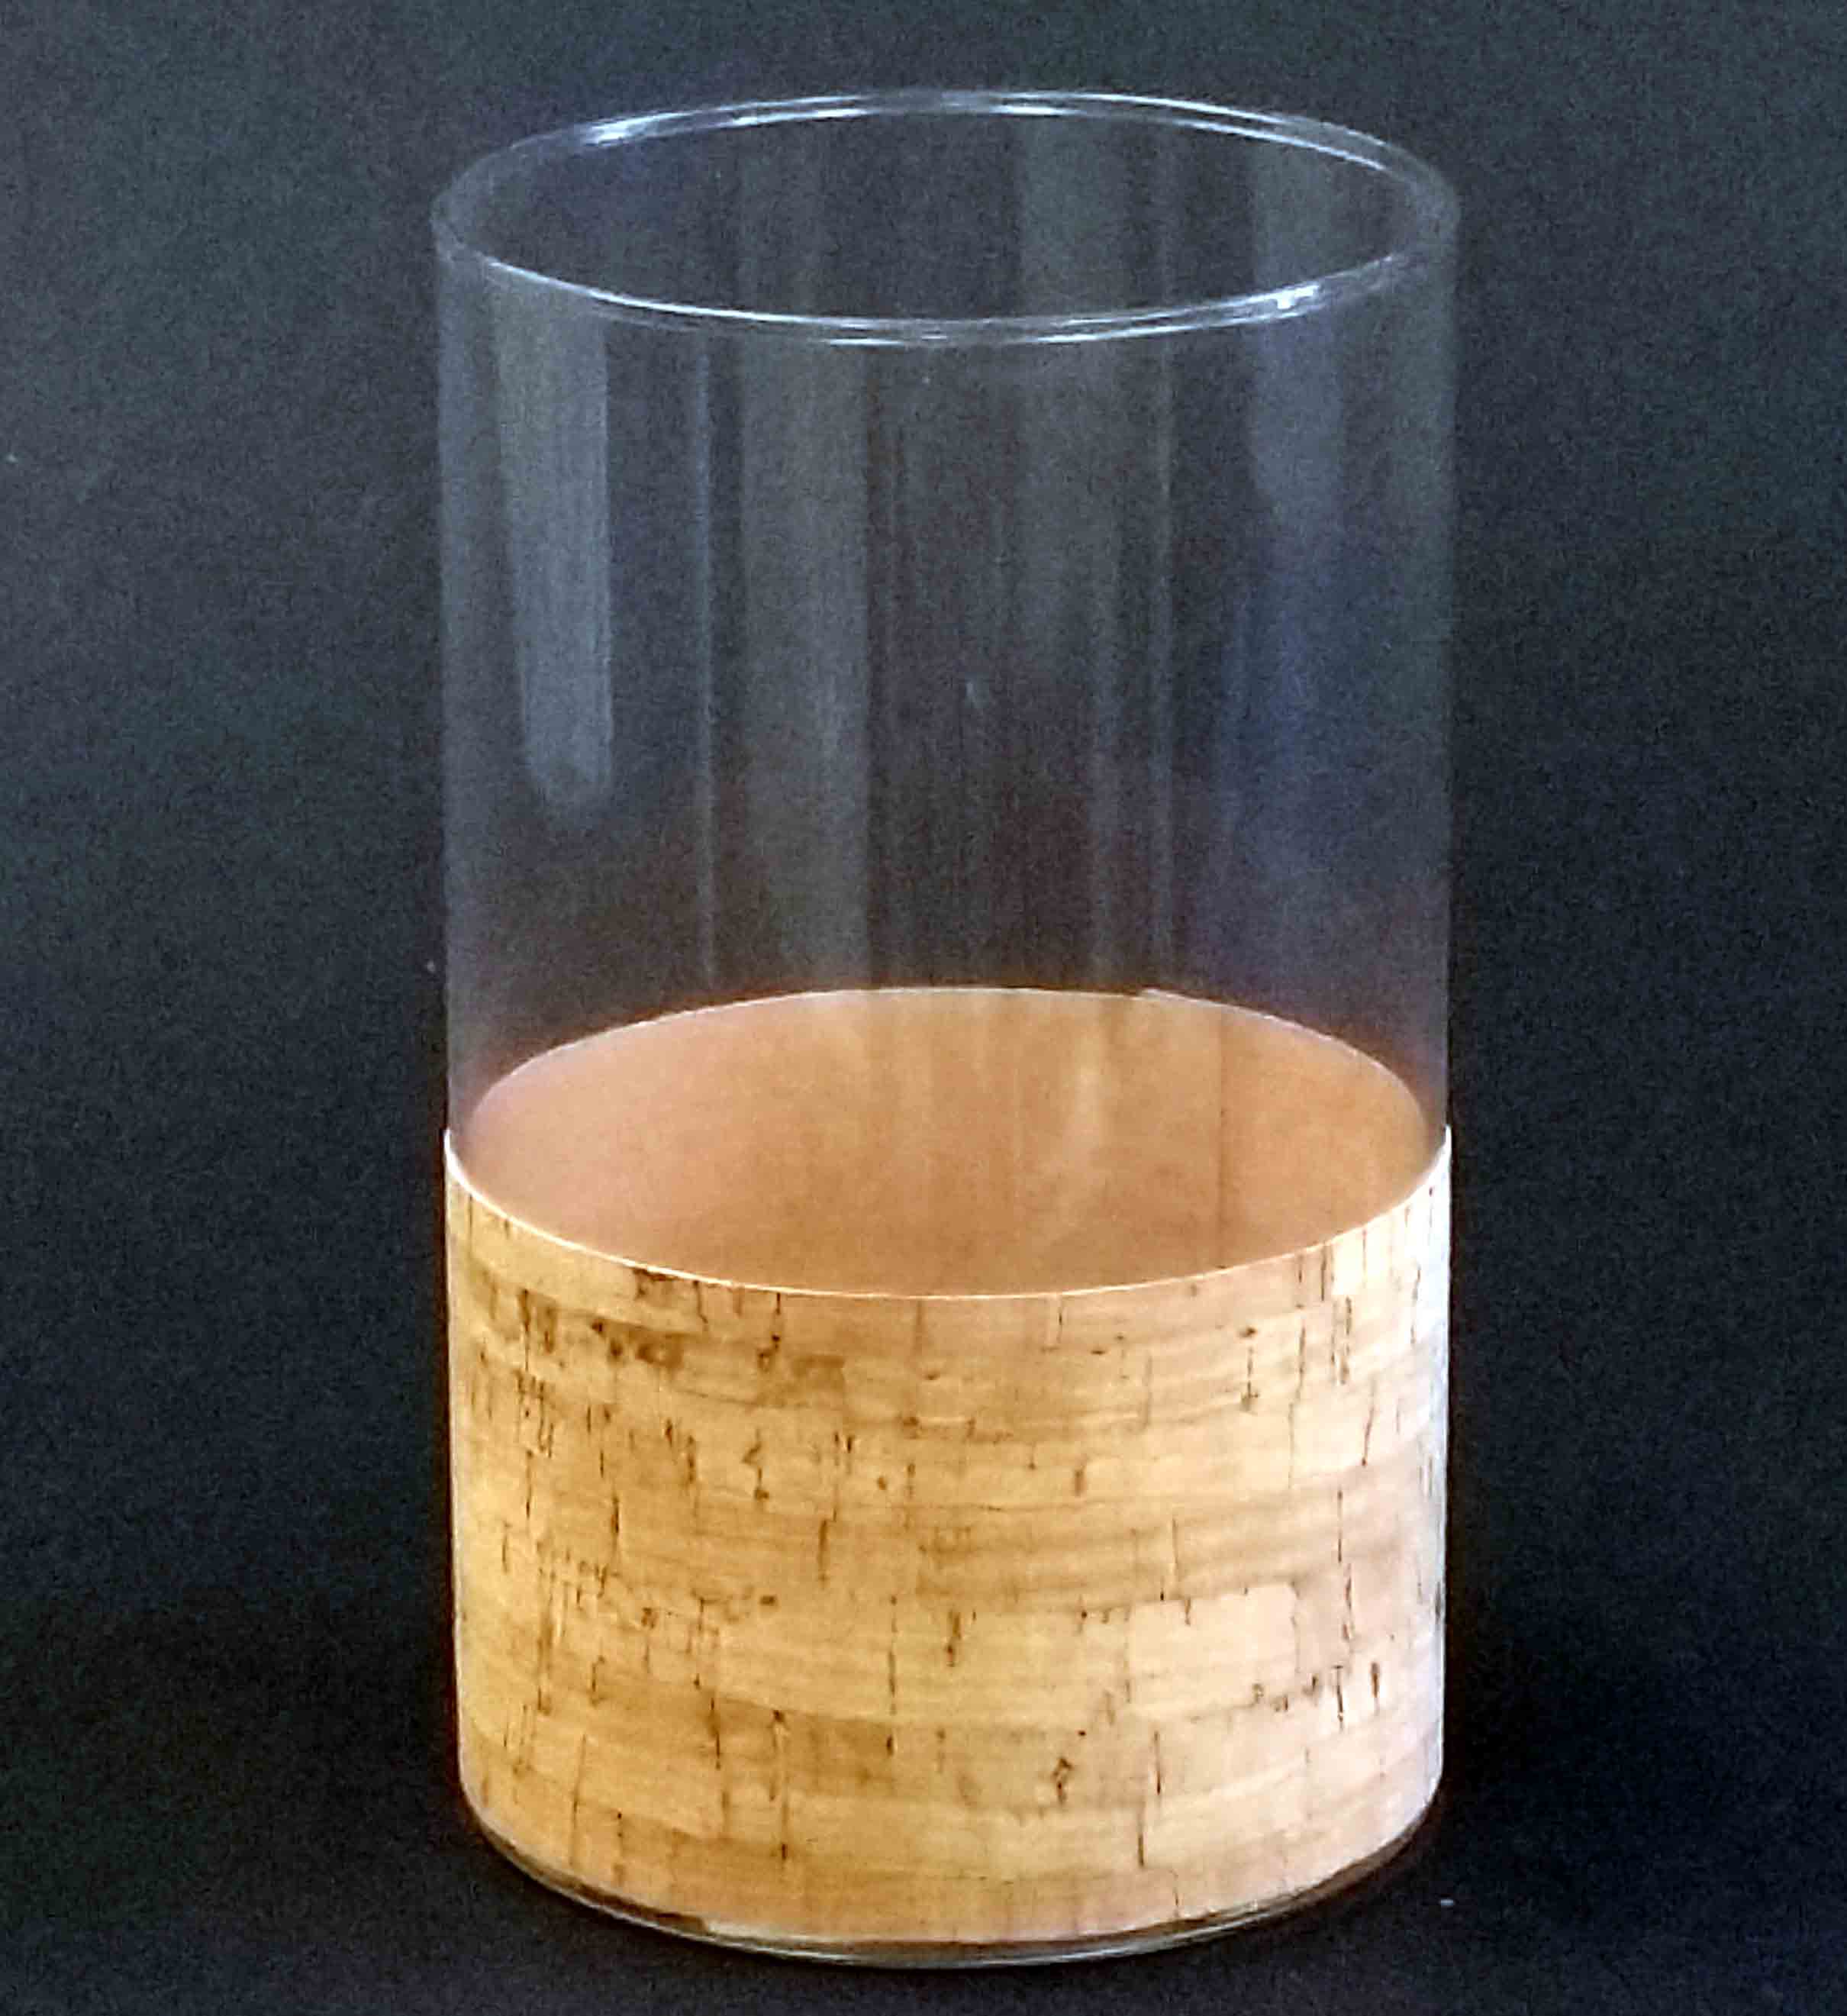 GL014 - 8" Round Vase with Cork - 5.95 ea, 5.65/12